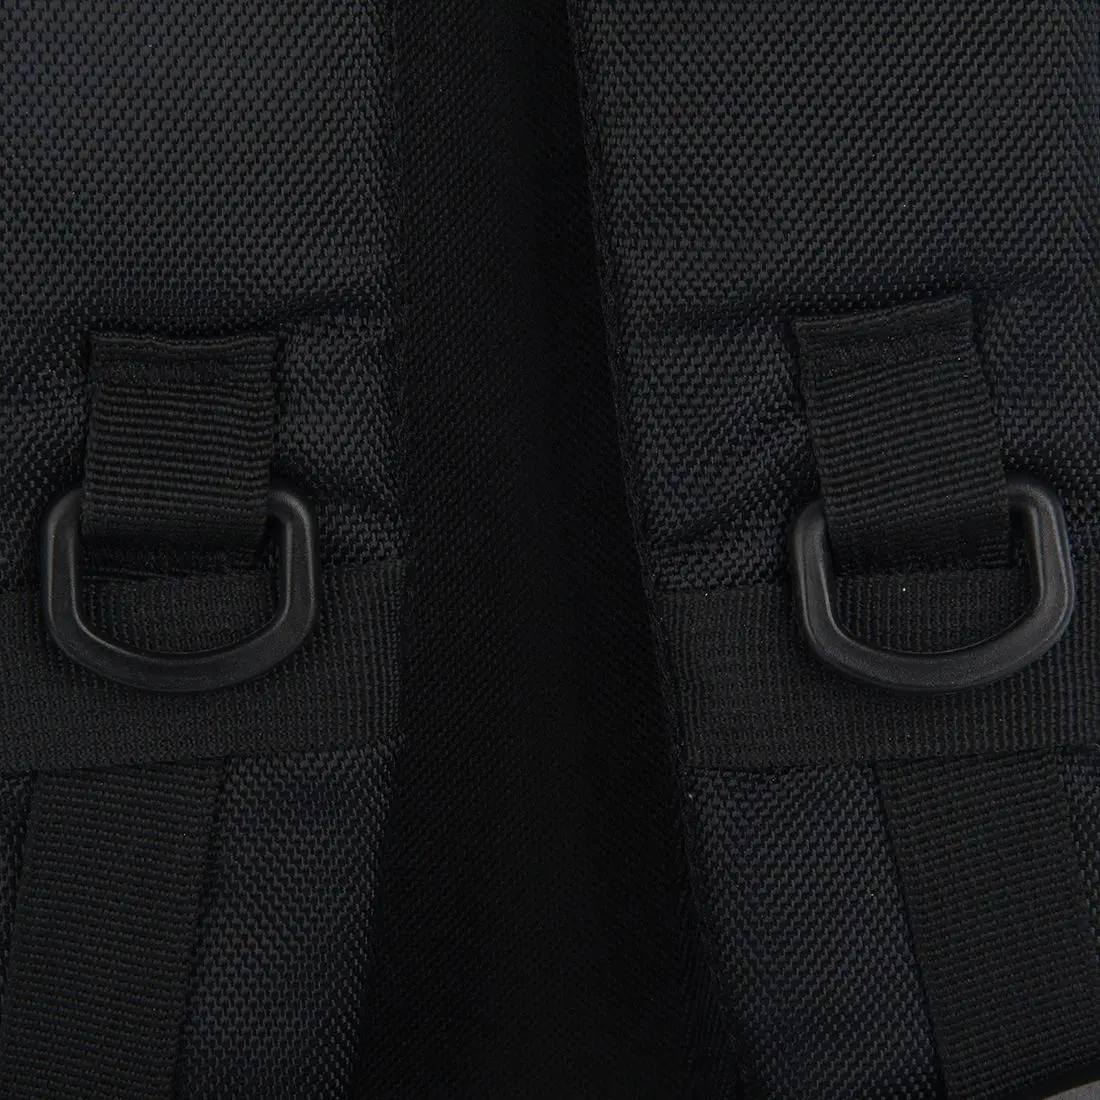 Водонепроницаемый цифровой DSLR фото мягкий рюкзак для камеры многофункциональная камера сумка для путешествий на открытом воздухе